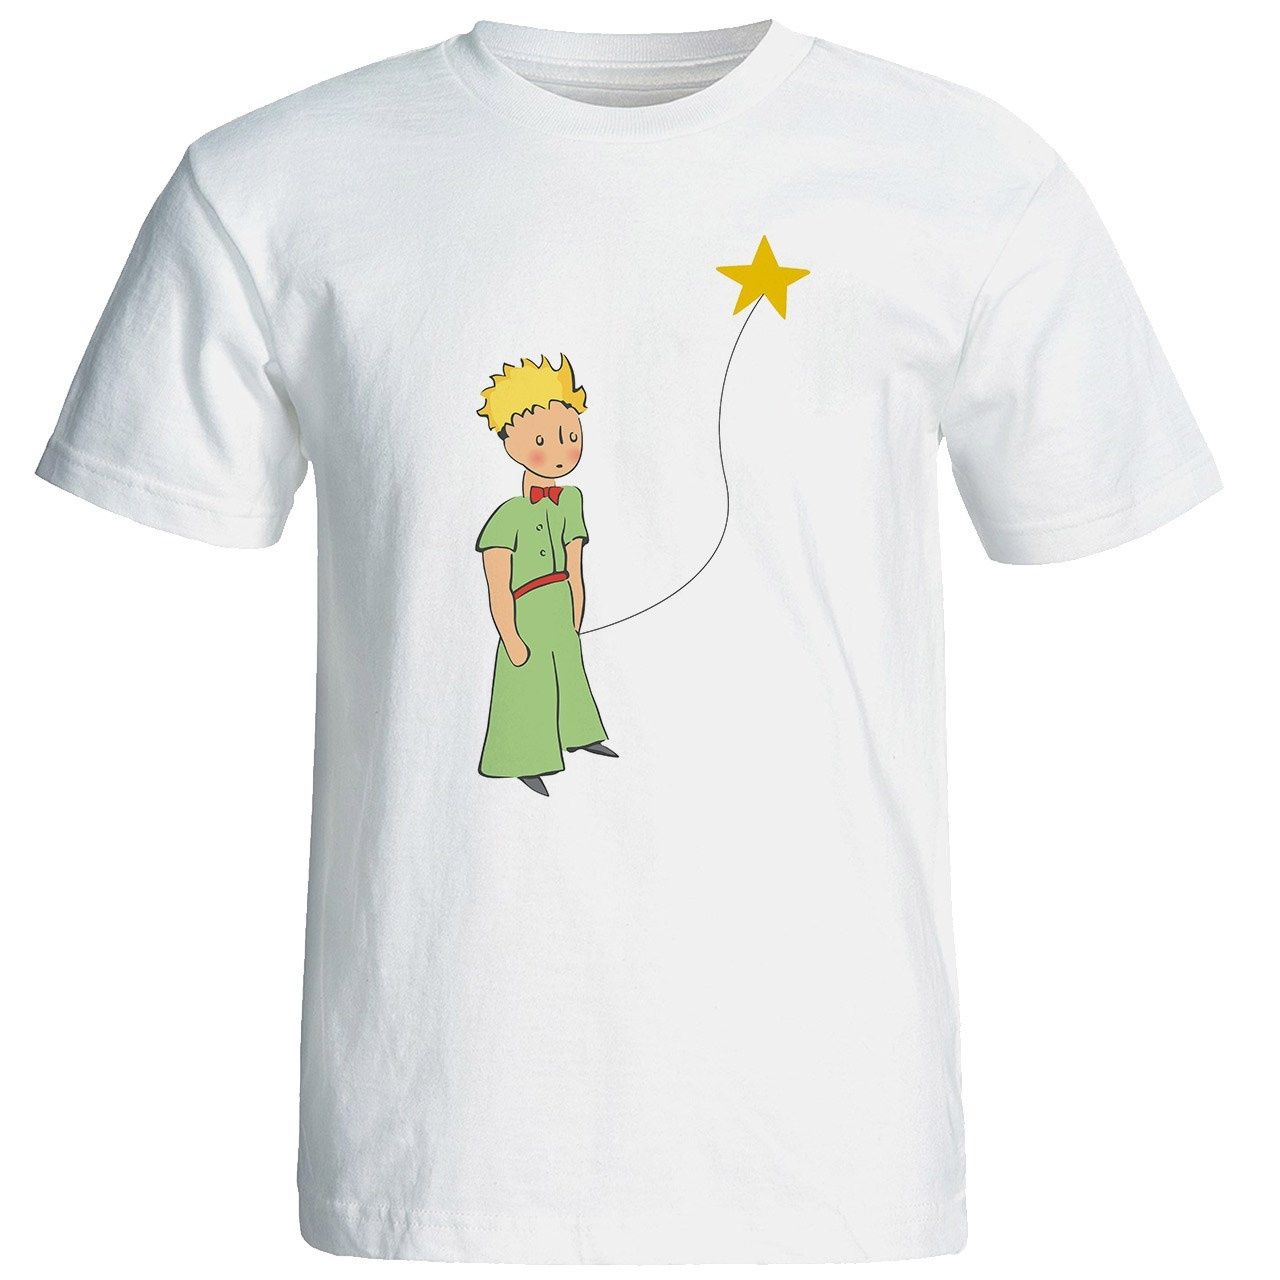 تی شرت آستین کوتاه شین دیزاین طرح شازده کوچولو کد 4284 -  - 1